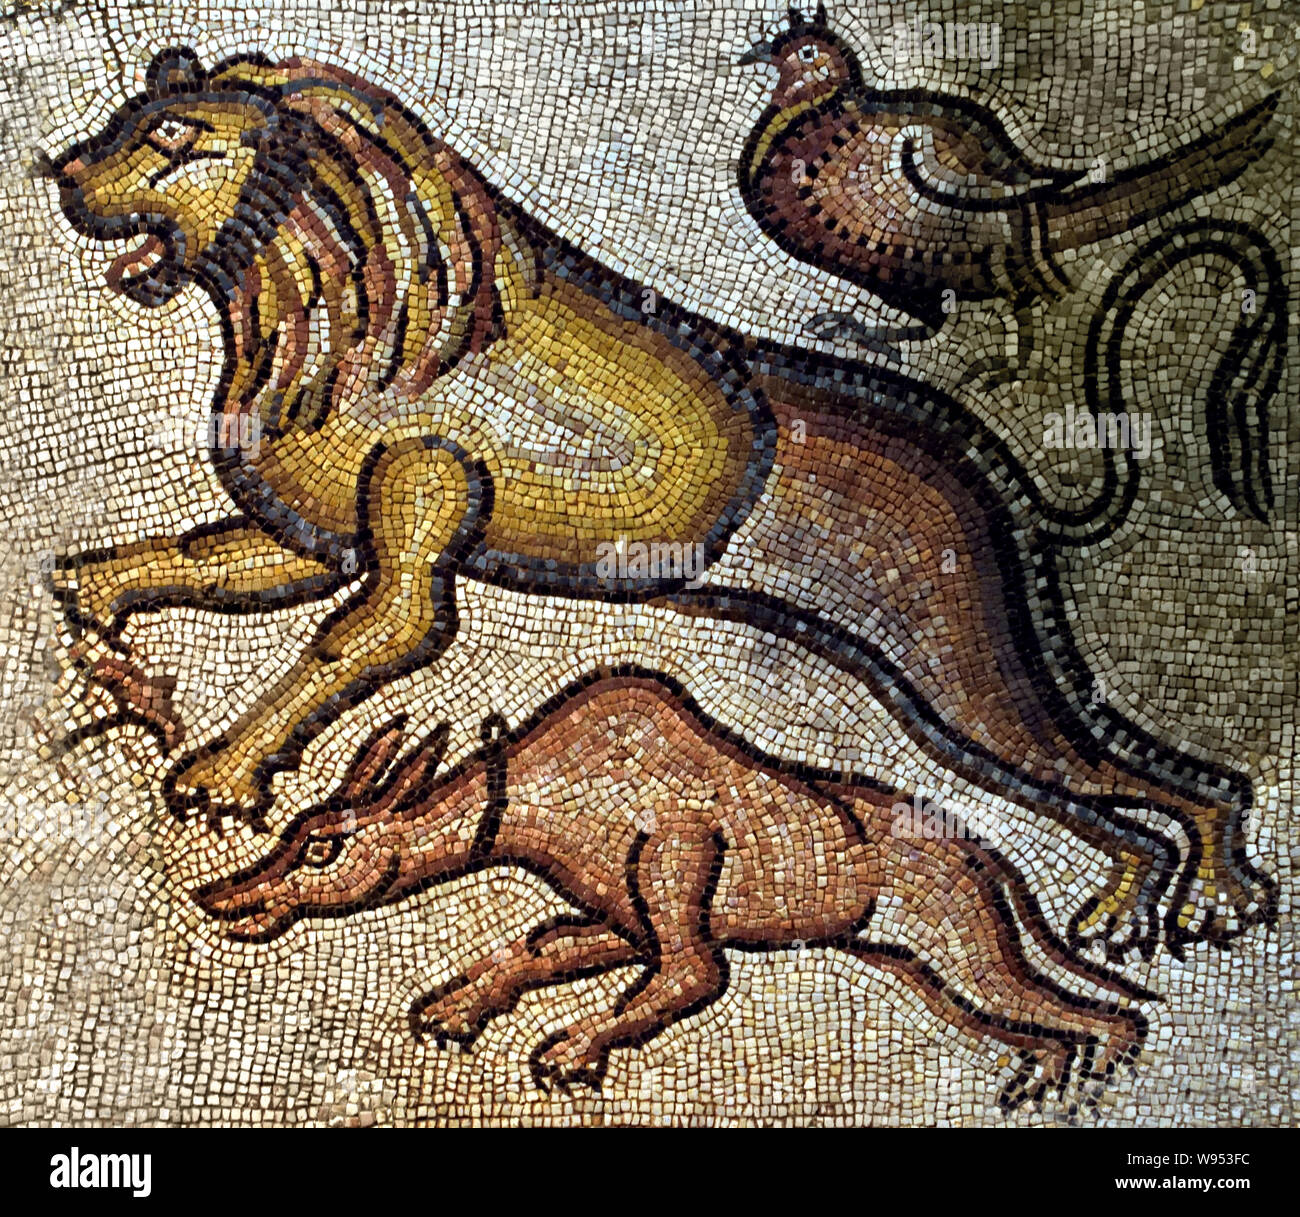 Animali, Mediterraneo orientale 5-6secolo. Mosaico - cubetti di marmo e calcare 5a-6a secolo D.C. Foto Stock